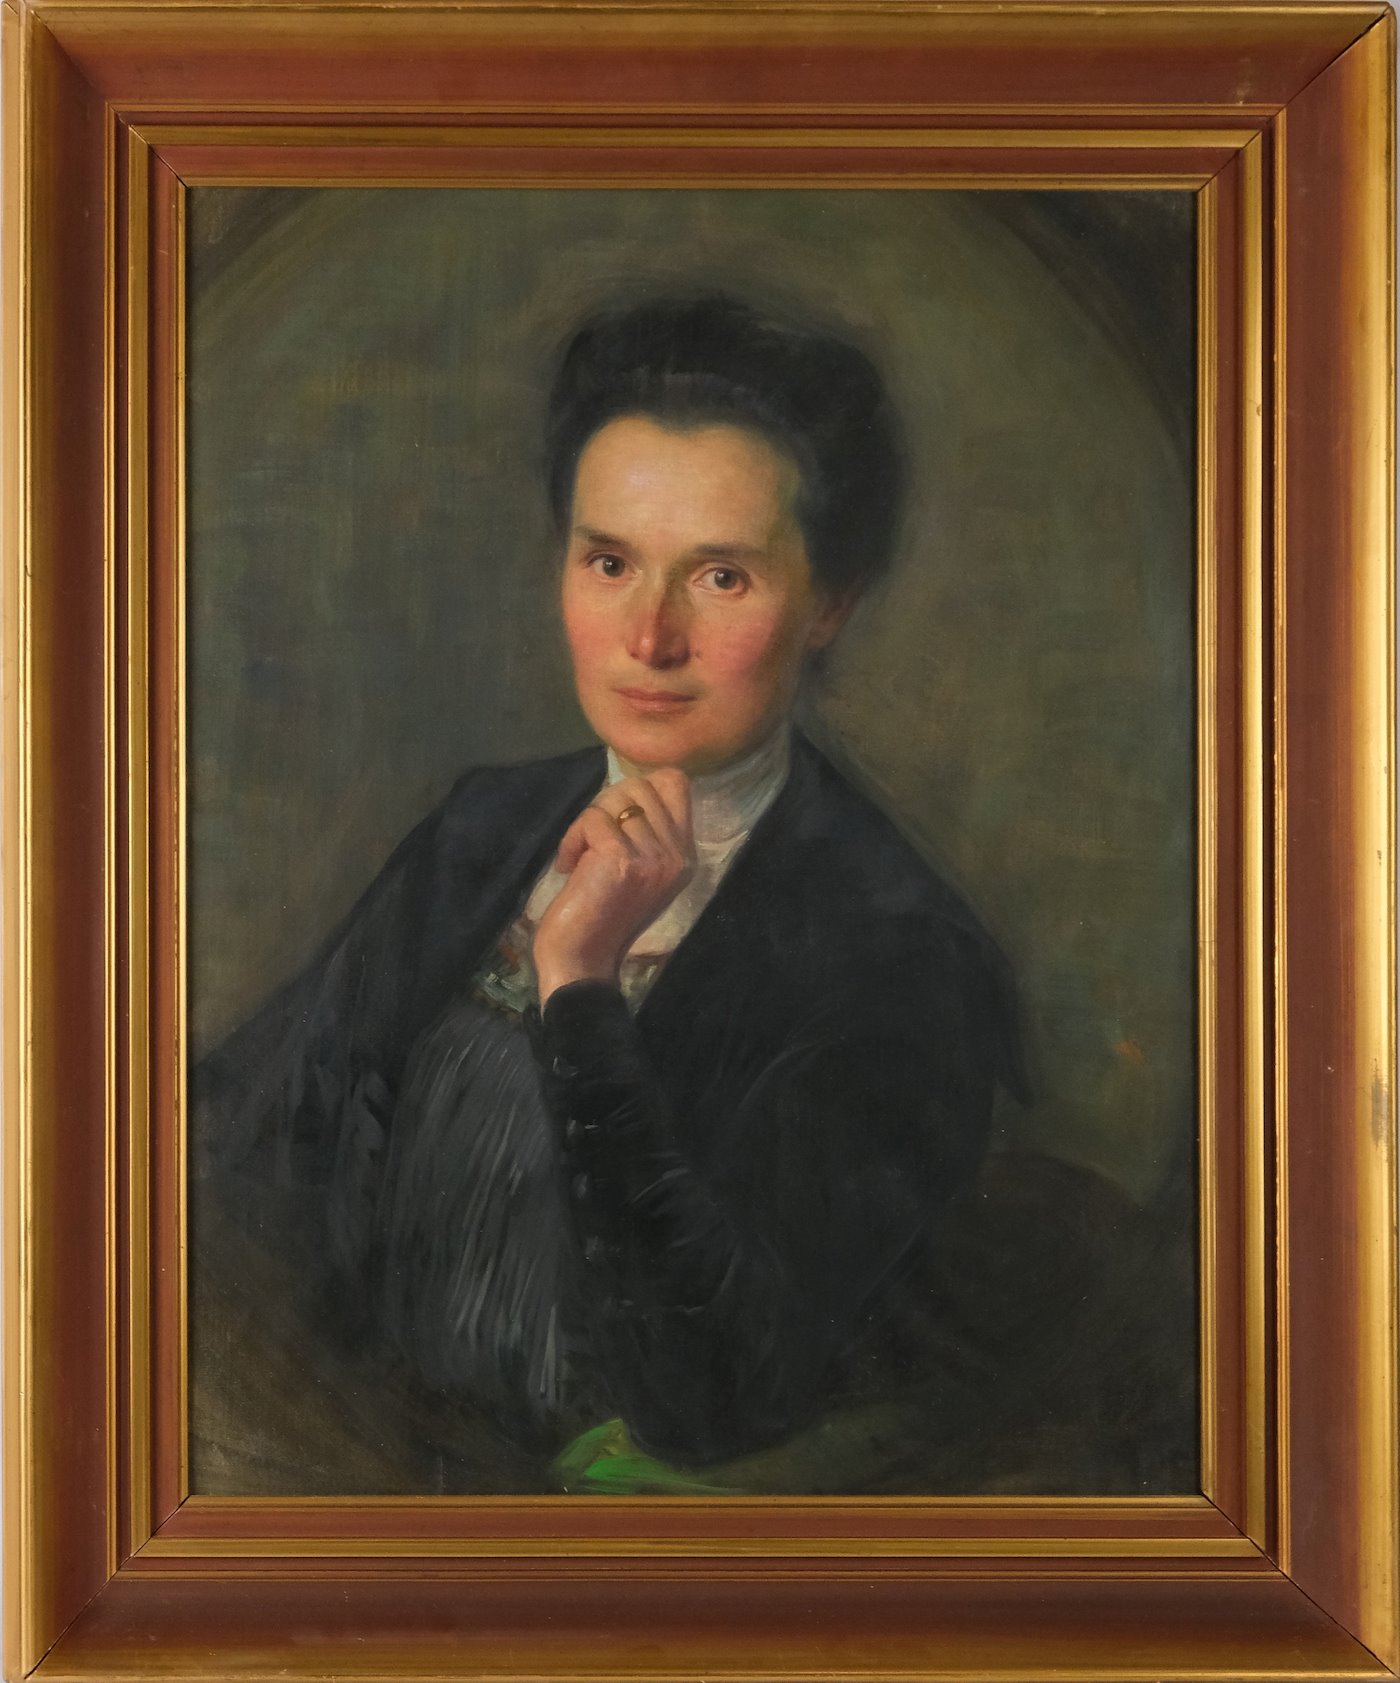 středoevropský malíř po roce 1900 - Podobizna ženy